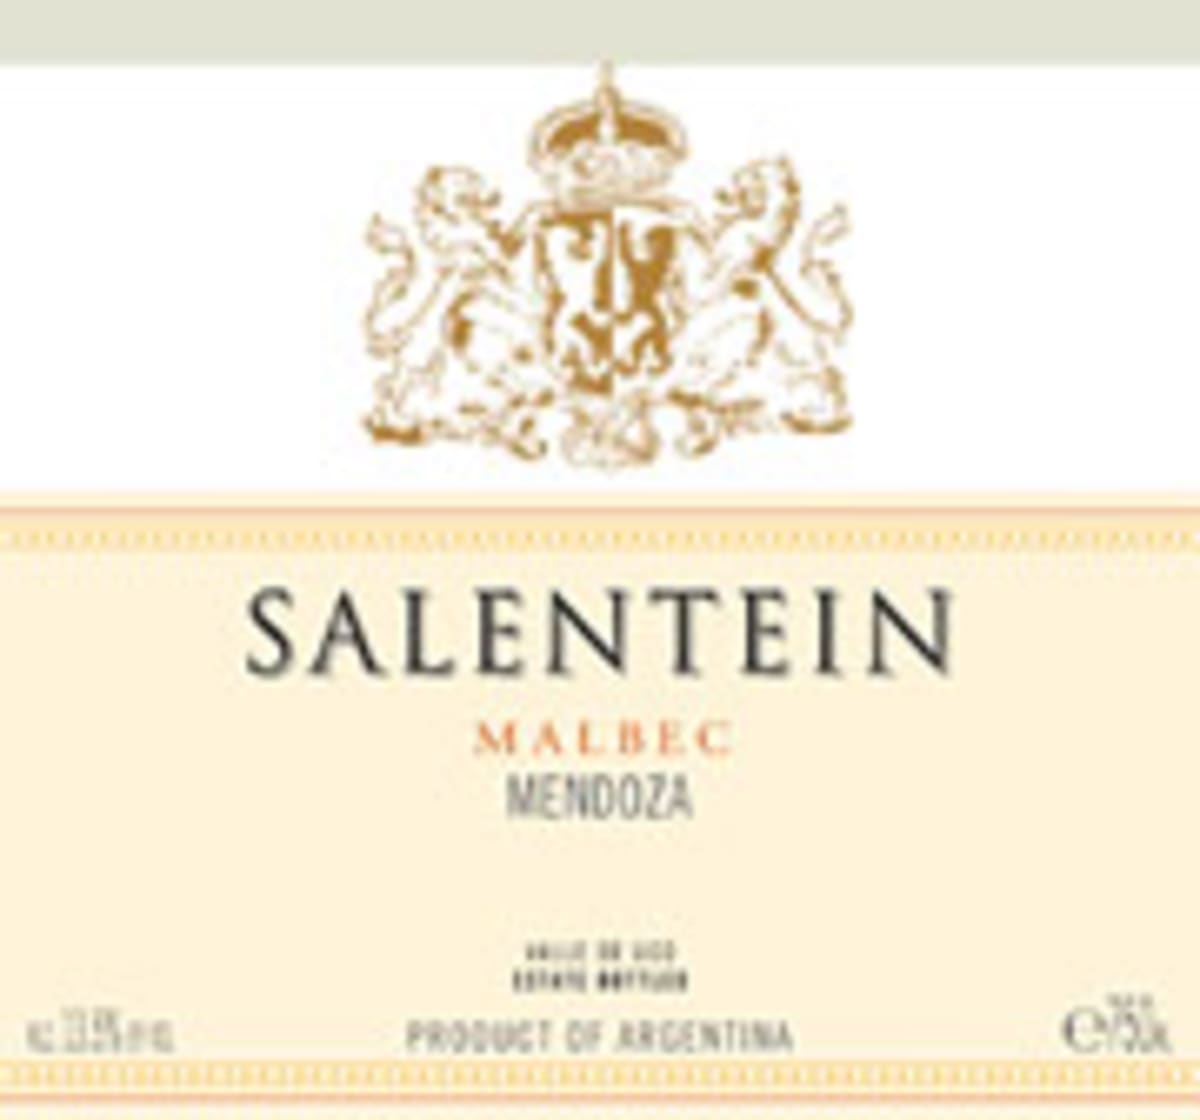 Salentein Reserve Malbec 2002 Front Label